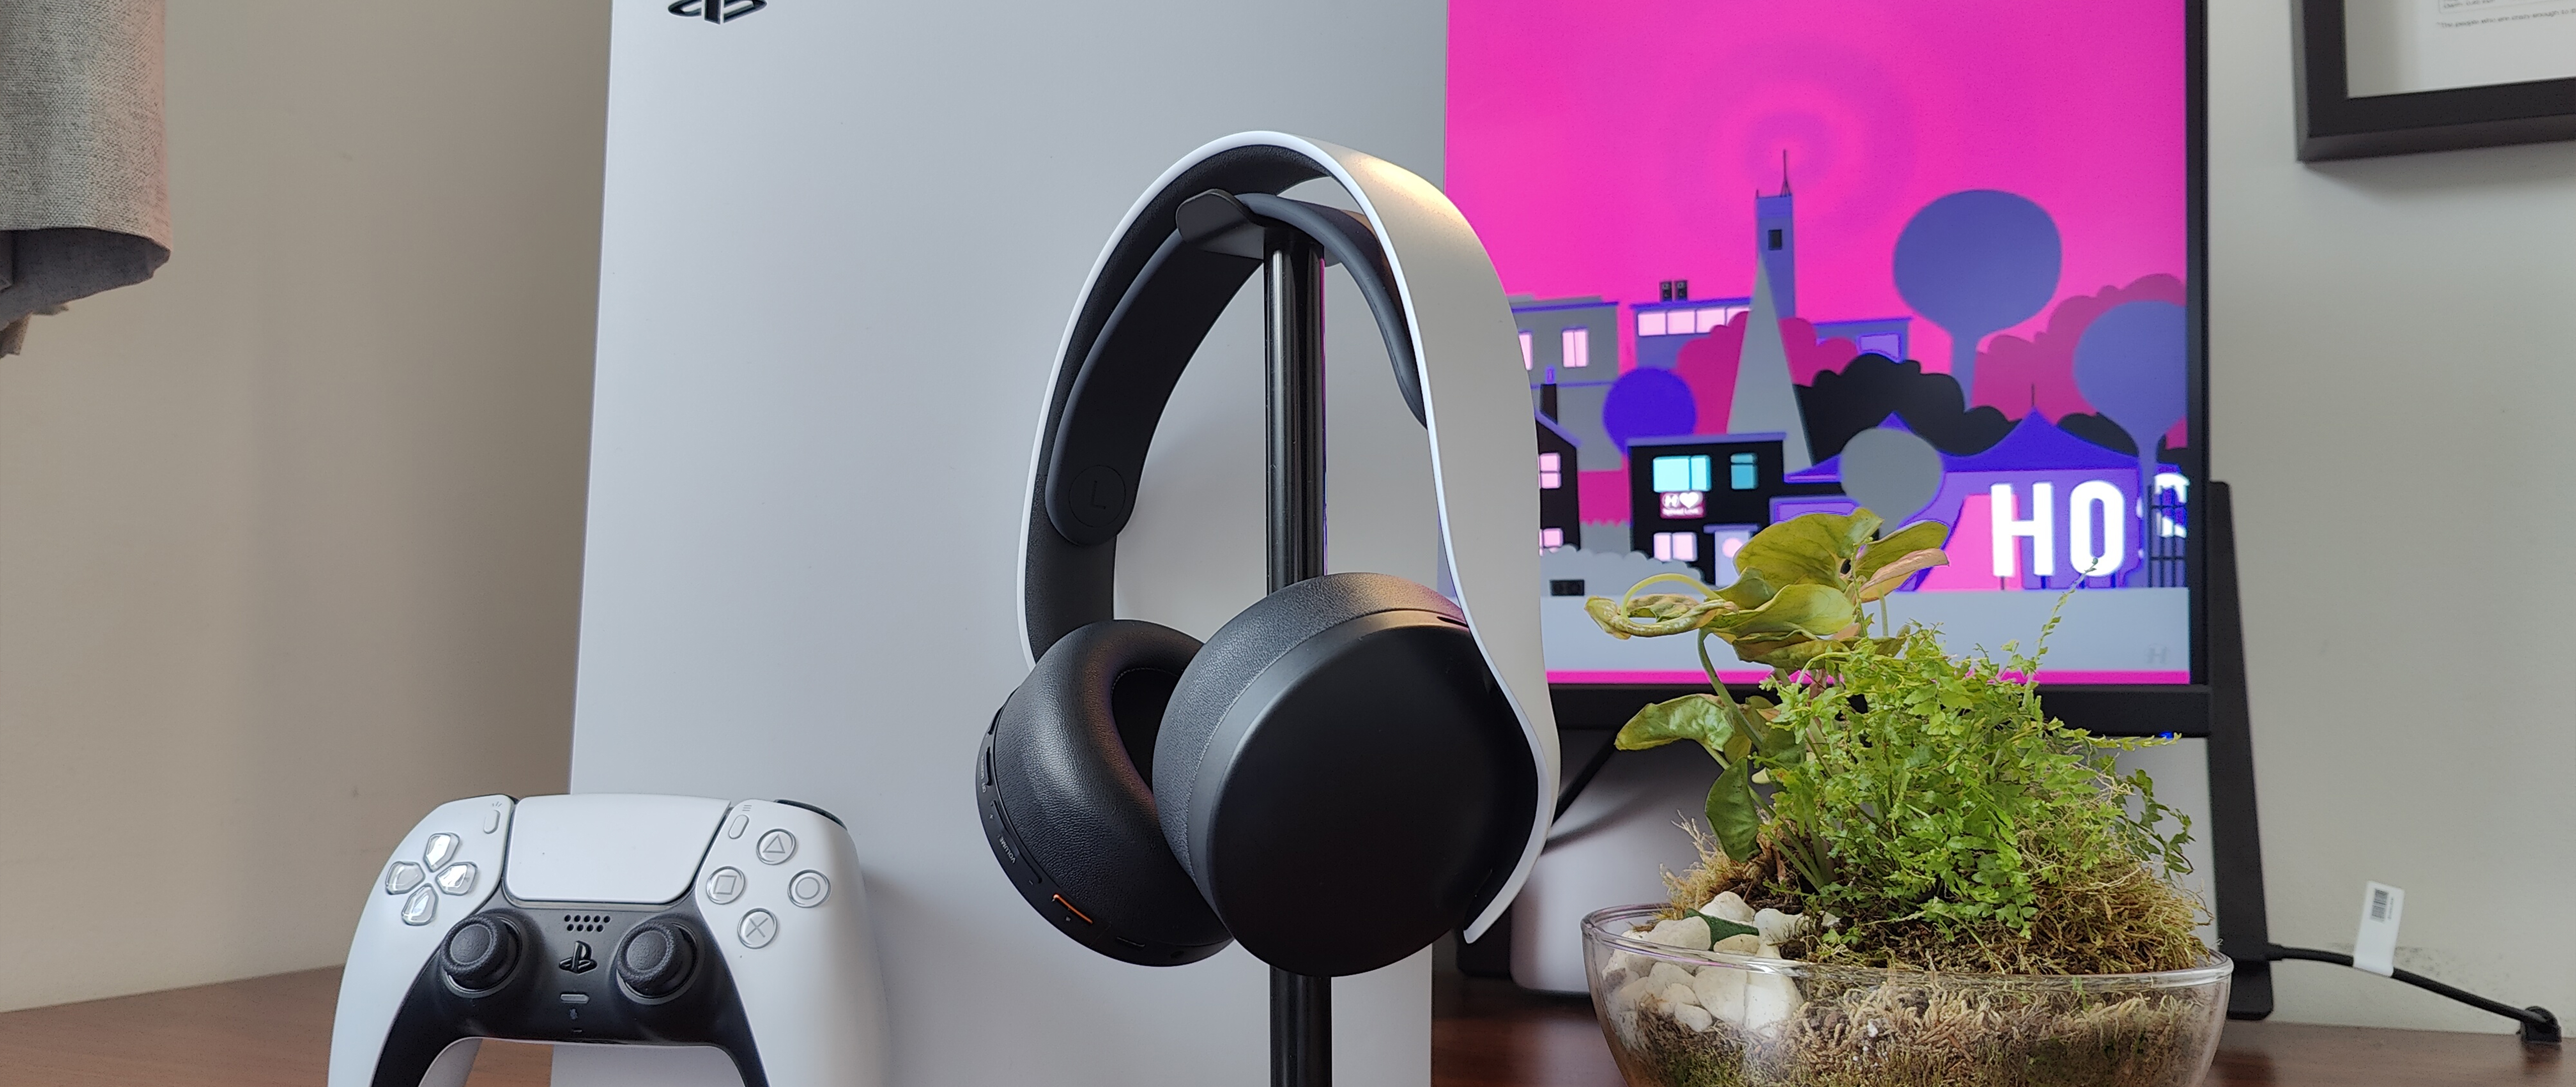 Kreek Onderhandelen Rook Pulse 3D PS5 wireless headset review: The only choice | Laptop Mag